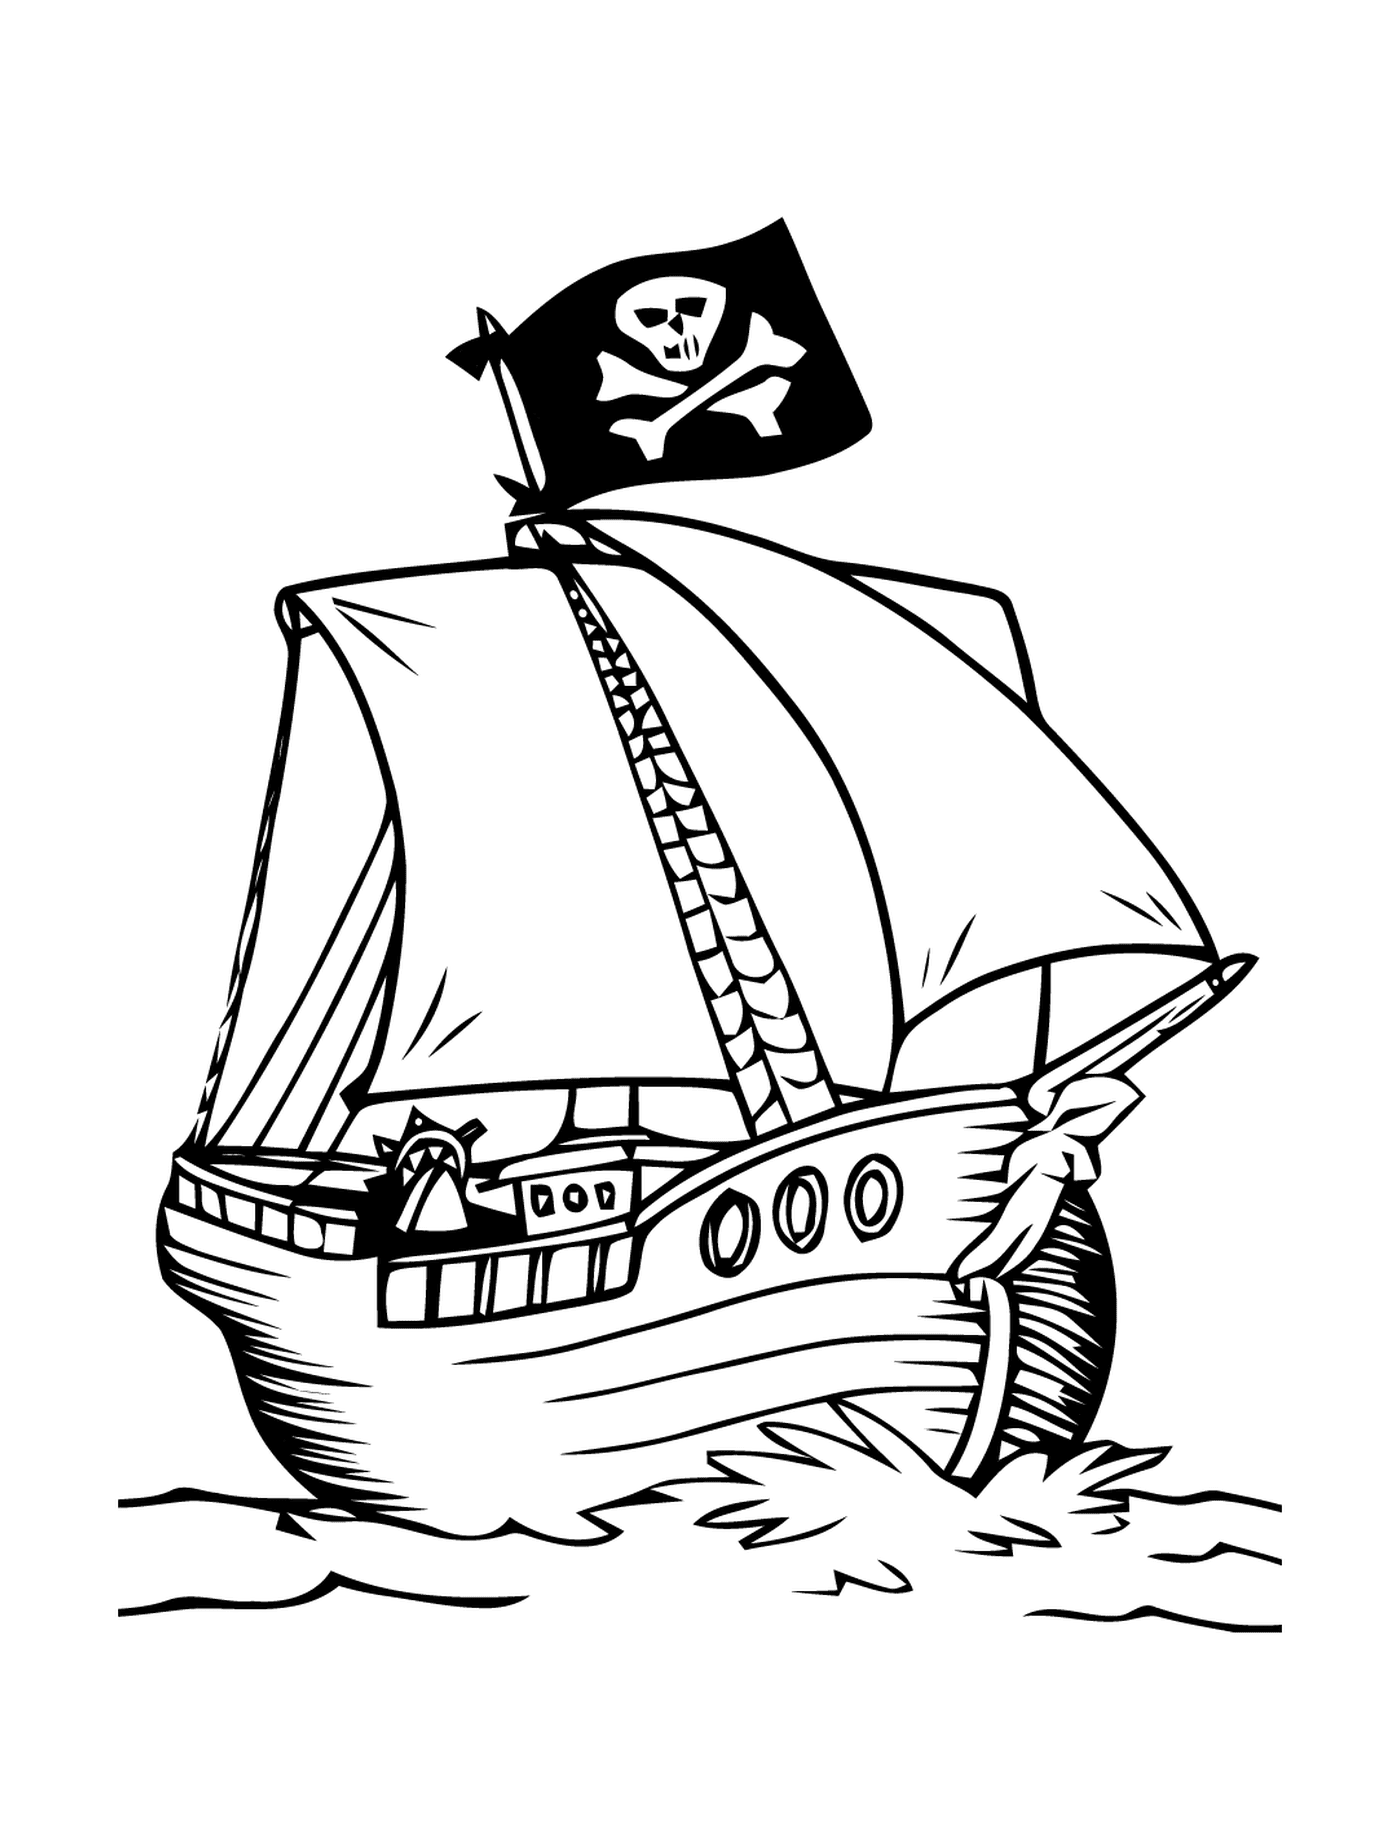  Piratenboot mit beängstigender Flagge 